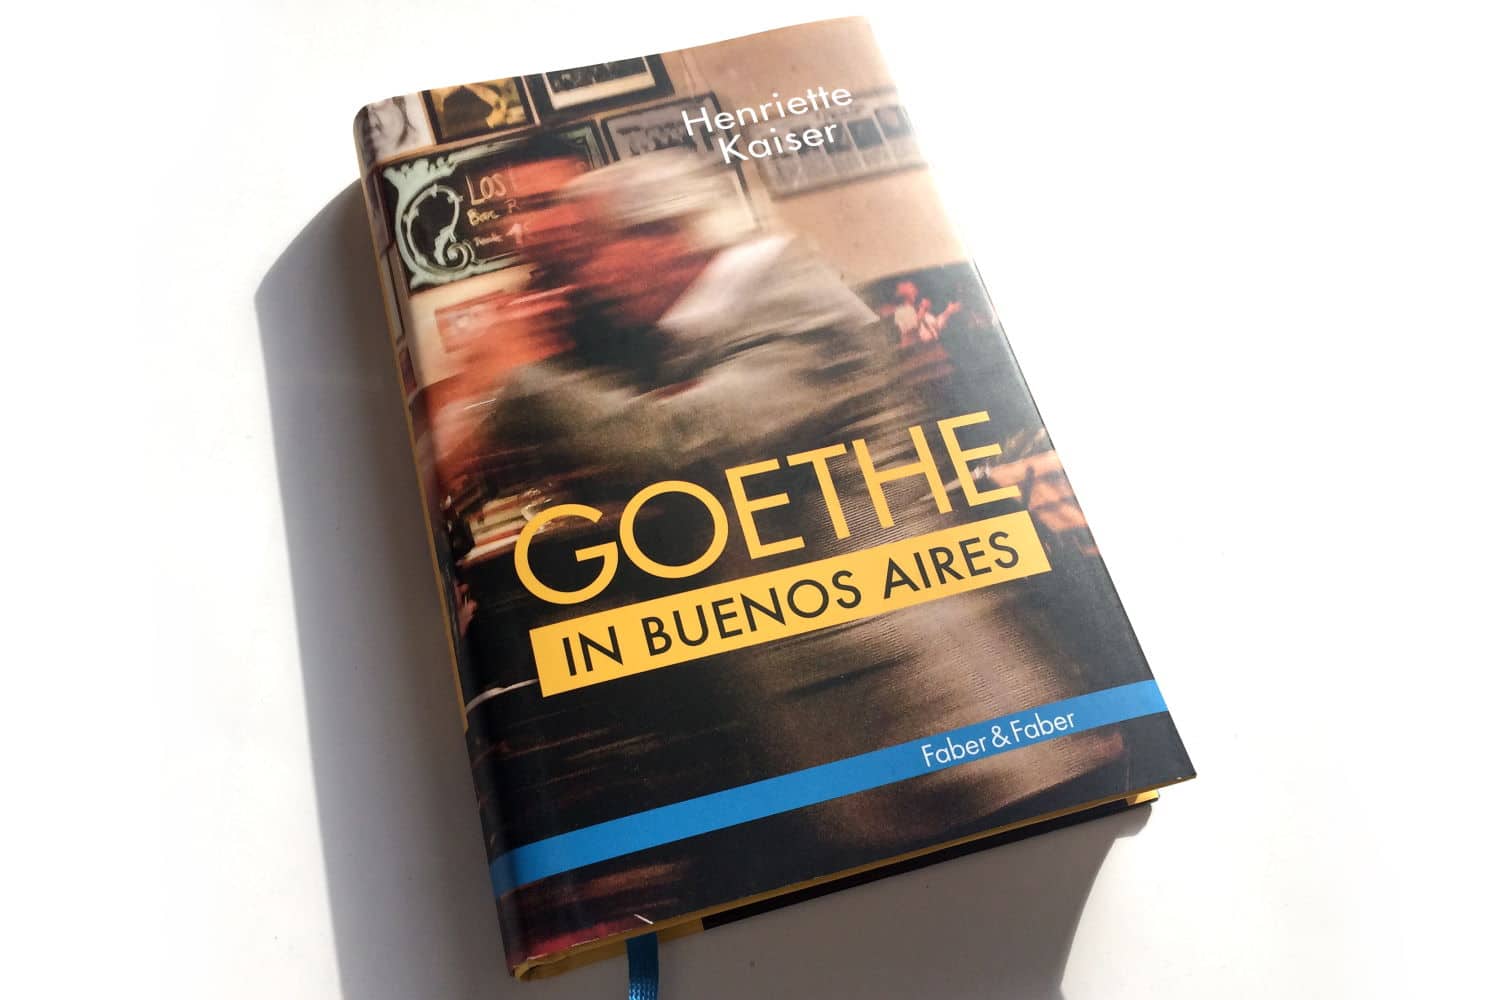 Goethe en Buenos Aires: conversaciones con refugiados judíos alemanes que llegaron a la Argentina siendo niños – Leipzig News